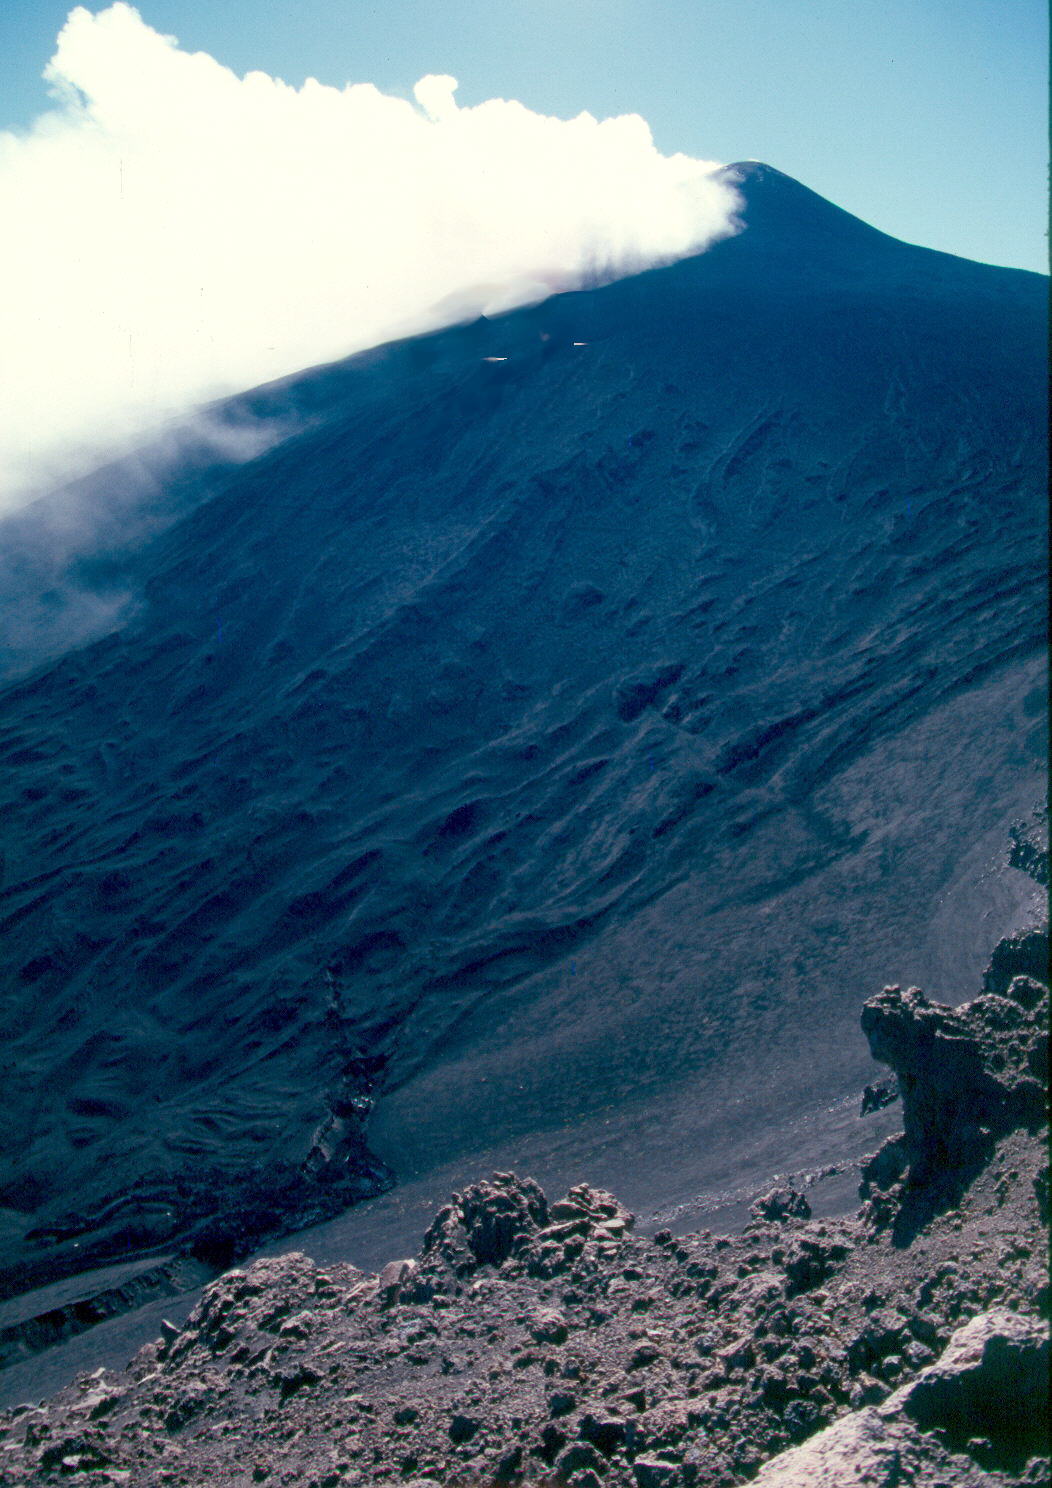 Cabecera del Valle del Leone. Coladas filiformes y fisuras eruptivas. Fotografía tomada en 2001